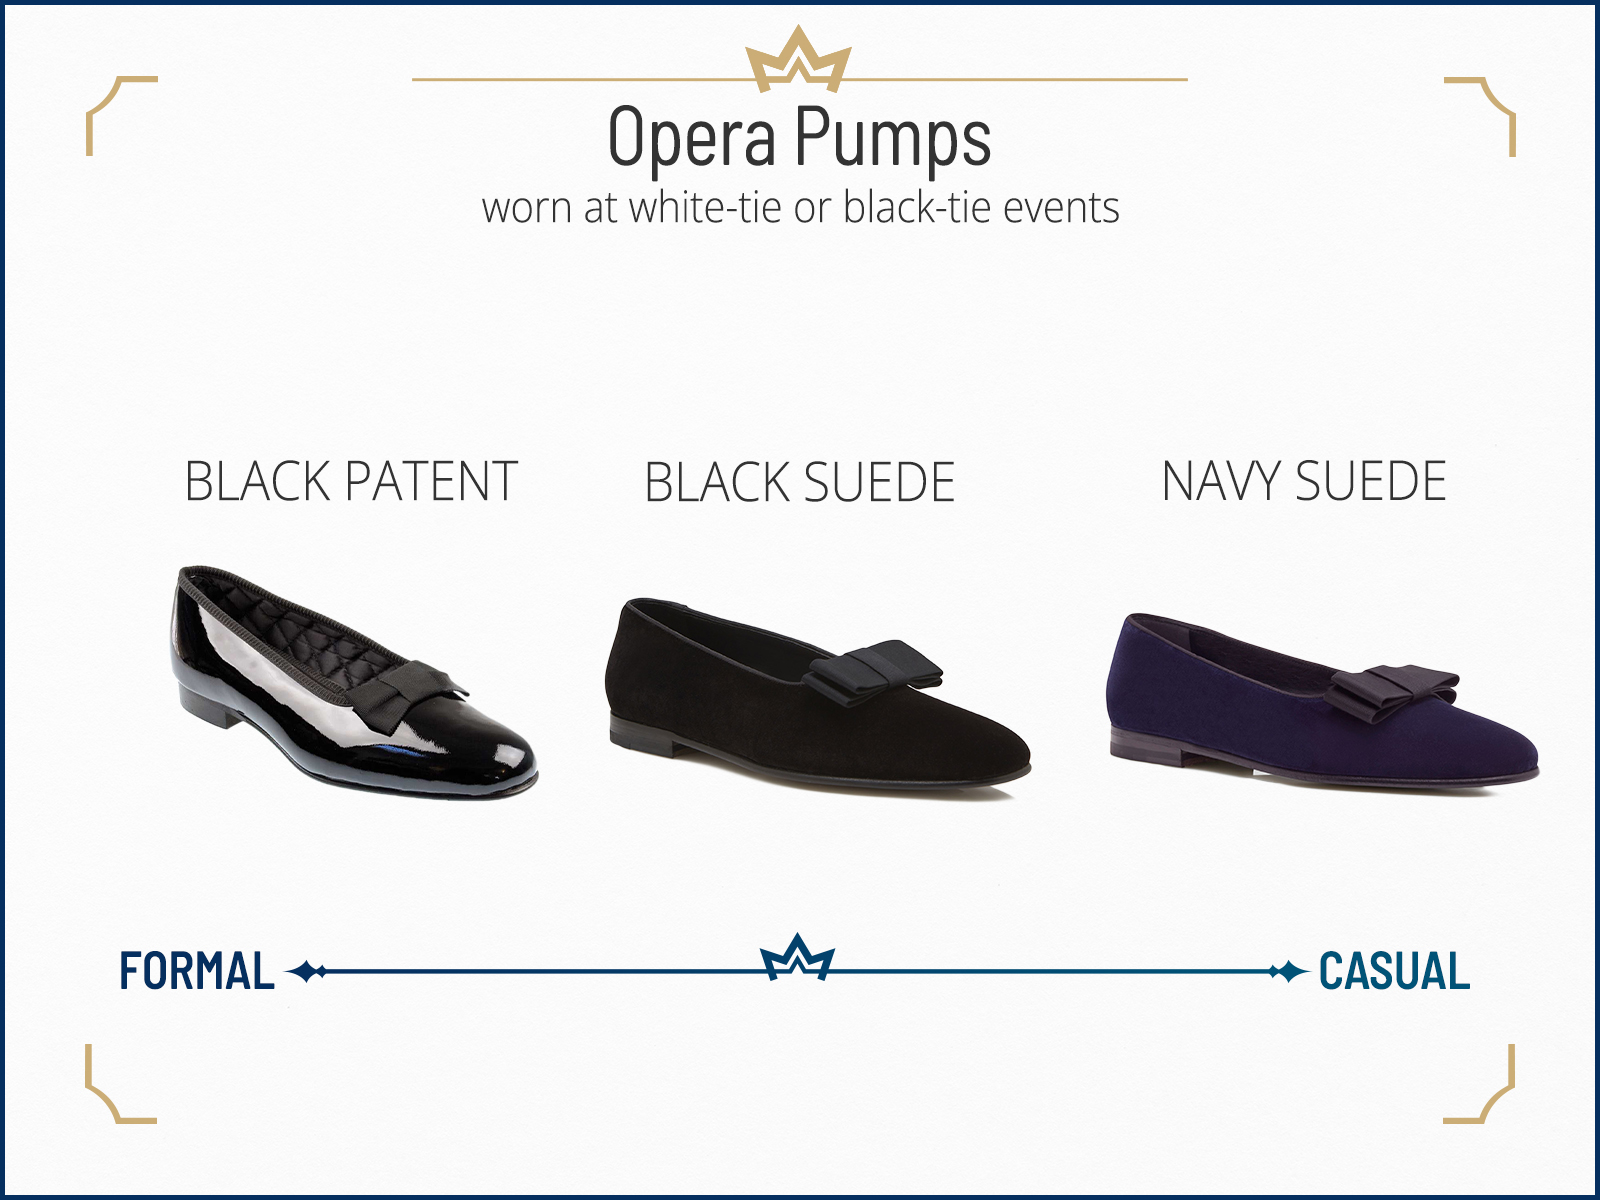 Opera pumps as formal black-tie footwear